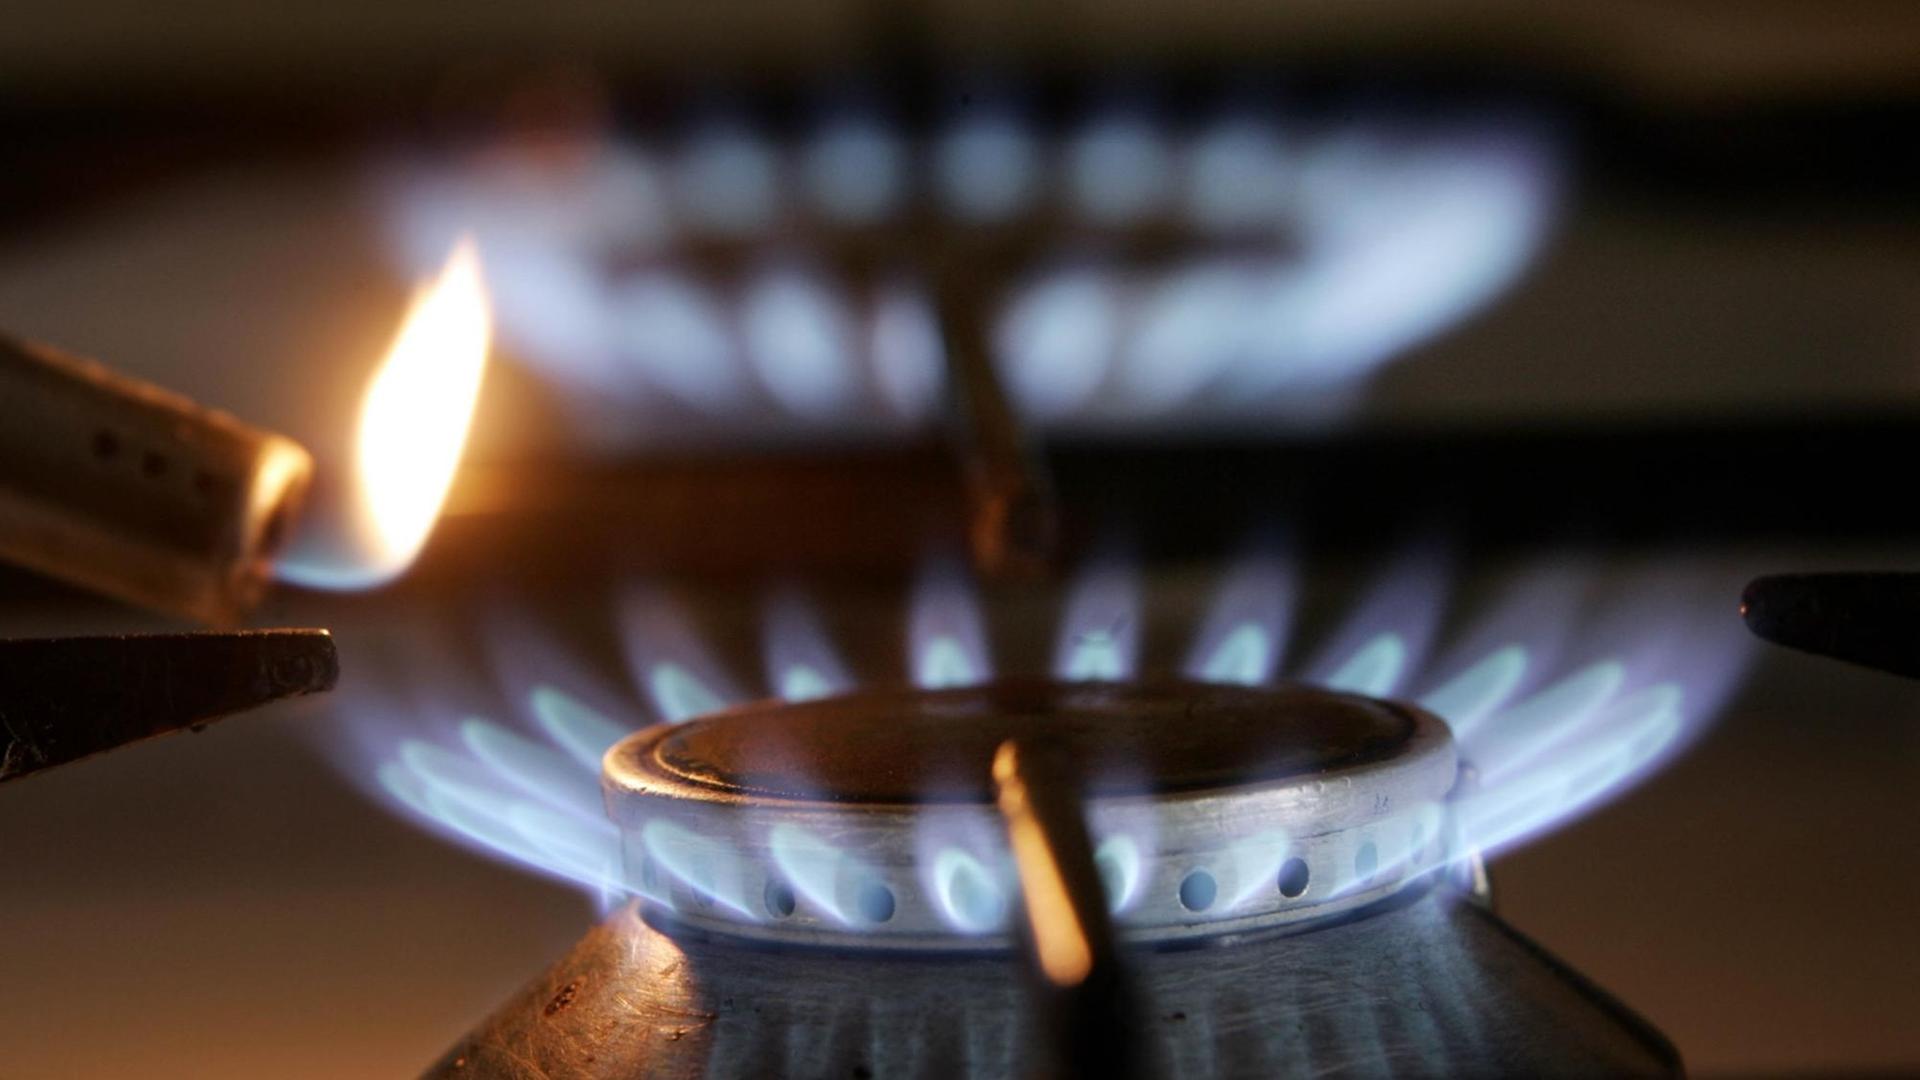 "Schlecht gemachter Schnellschuss" - Verbraucherzentralen: Gasumlage sollte wegen offener Fragen verschoben werden